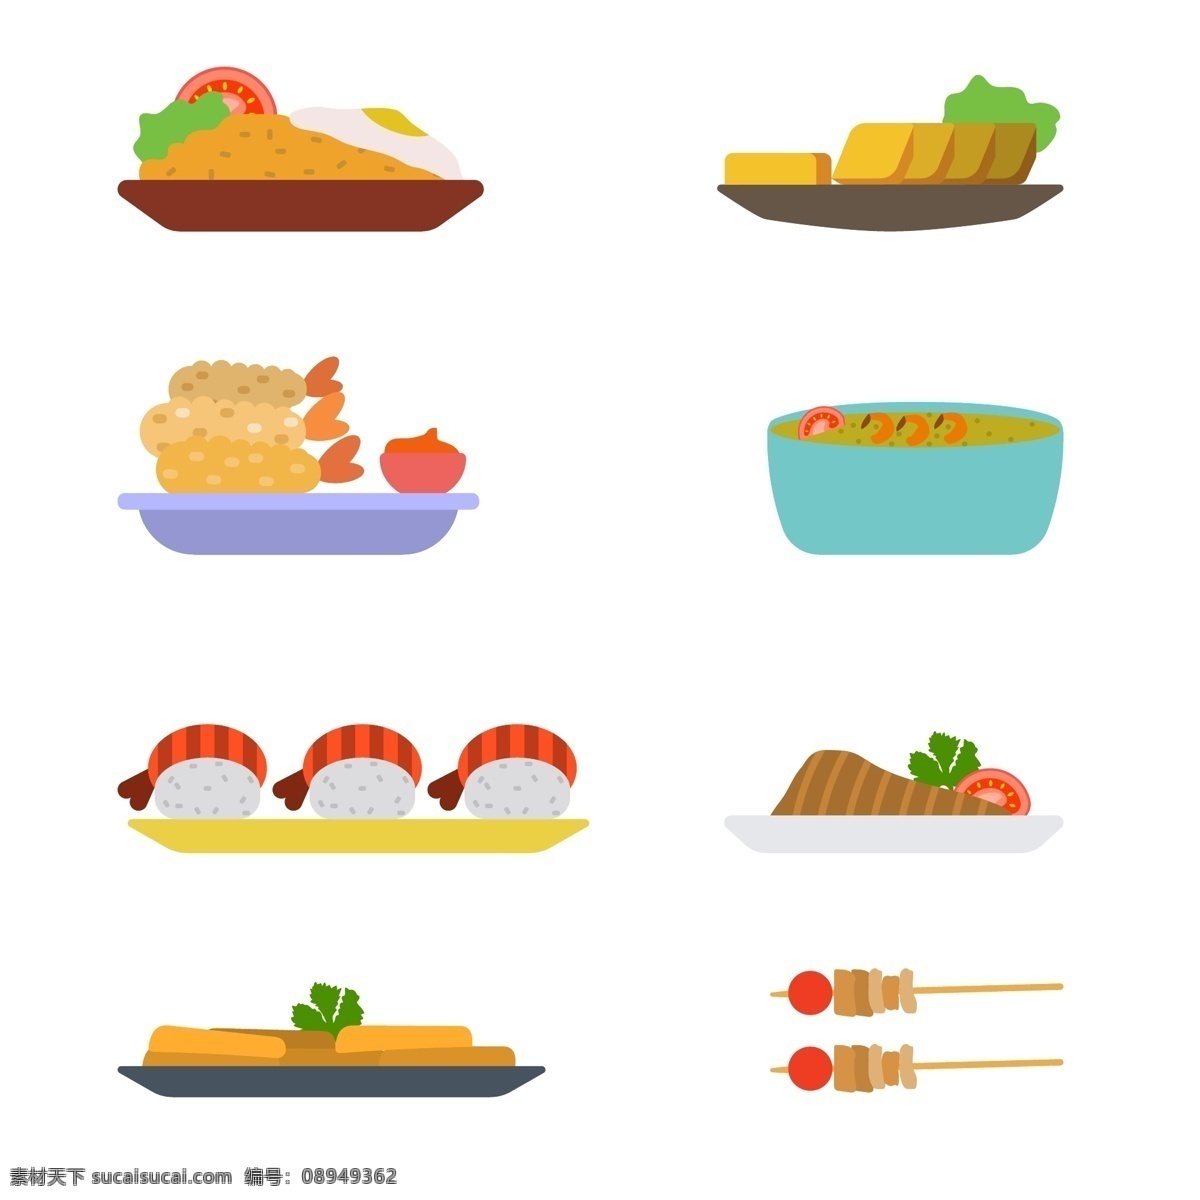 扁平 矢量 亚洲 食物 美食 矢量素材 手绘 手绘插画 手绘美食 寿司 亚洲食物 炸虾